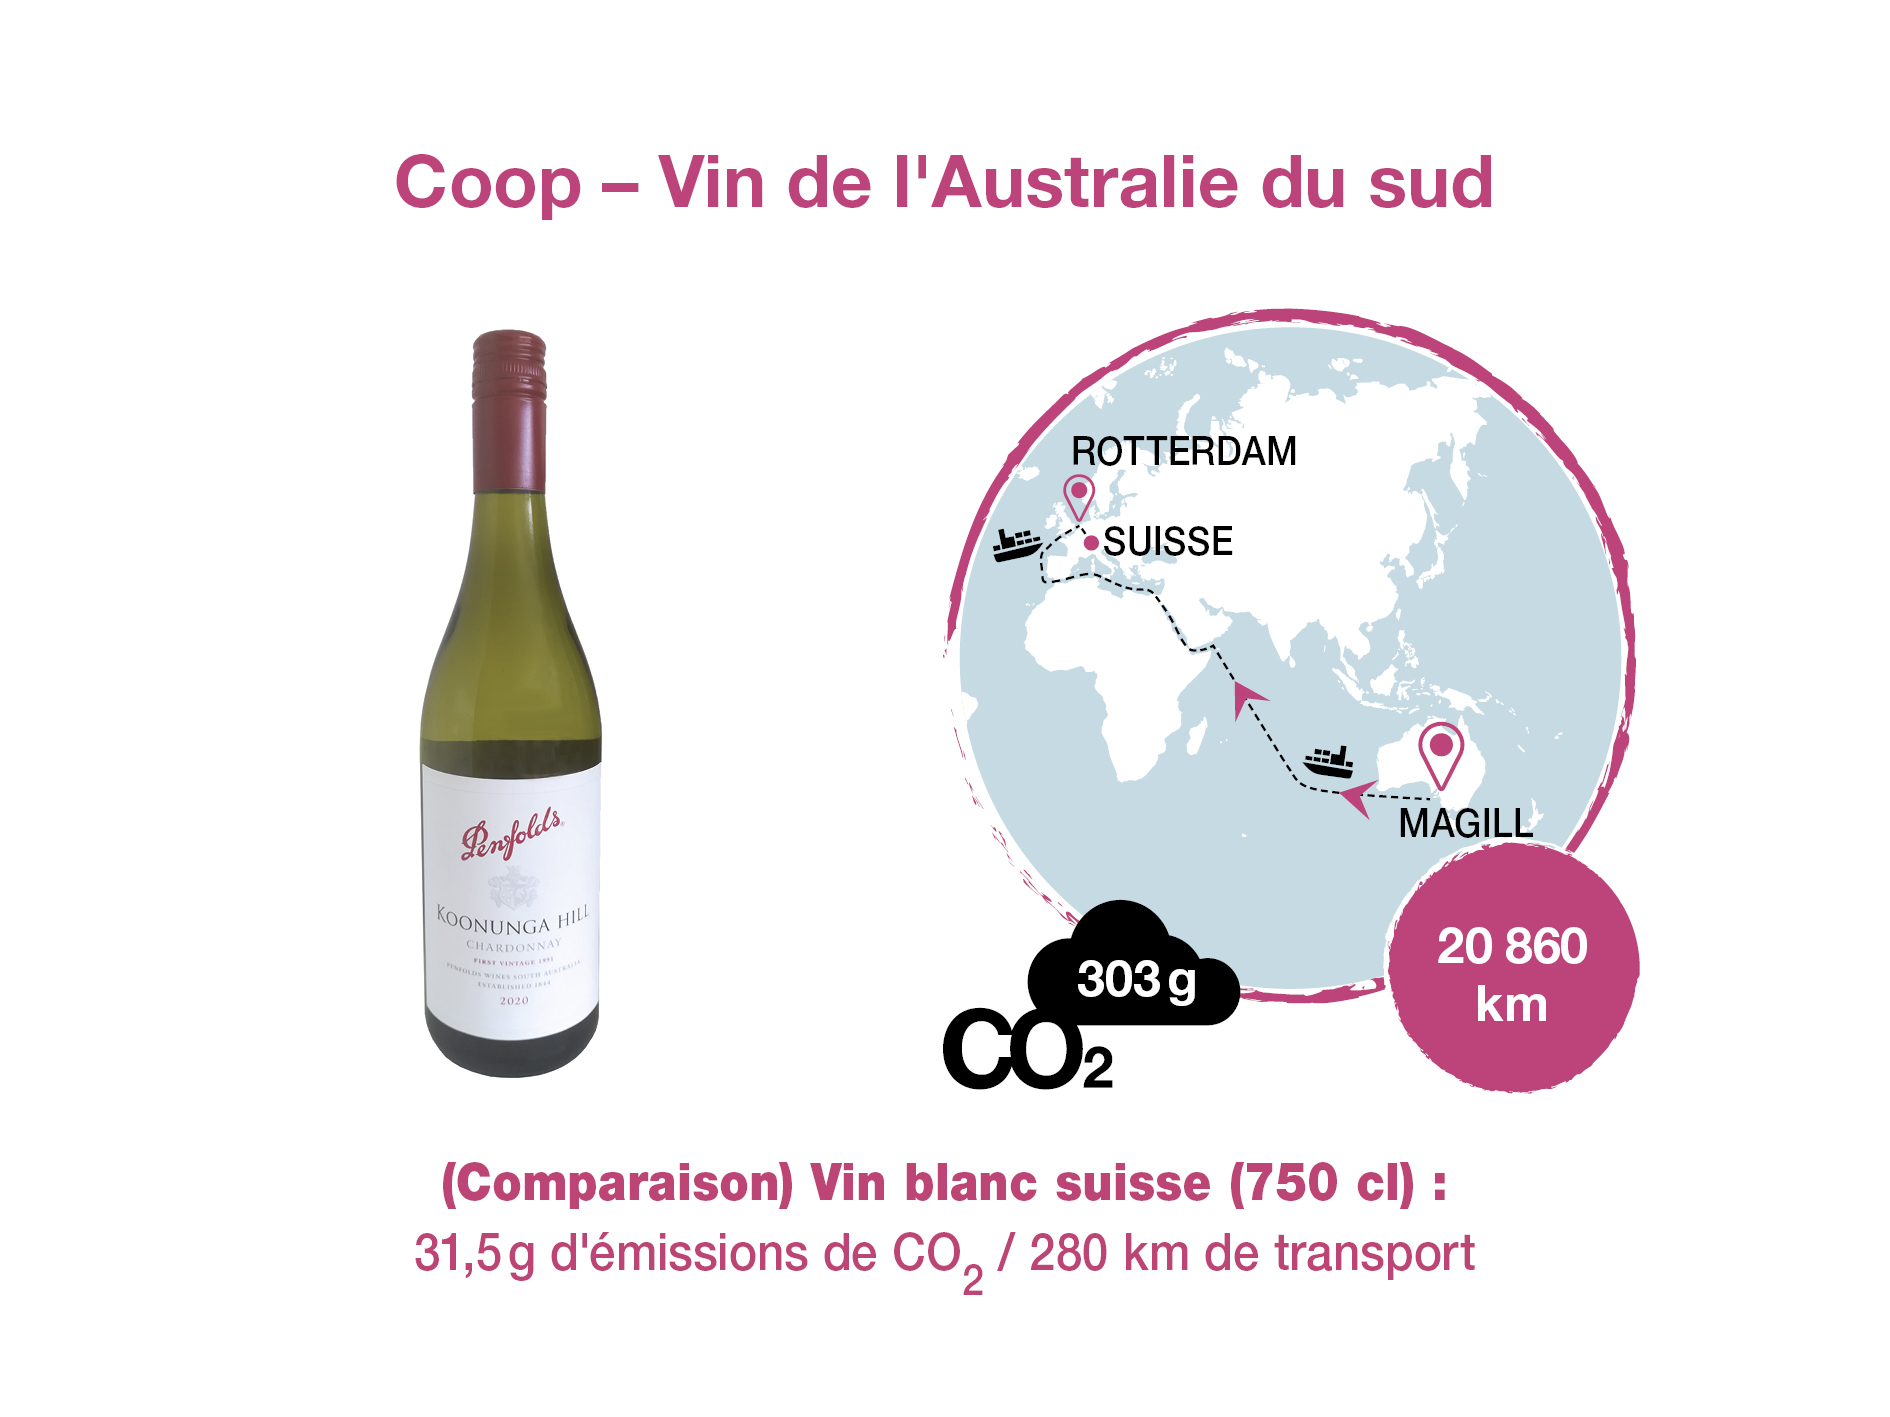 Vin blanc d’Australie du sud, Coop. Calcul des émissions de CO2 : Quantis; Graphique : Scriptum.